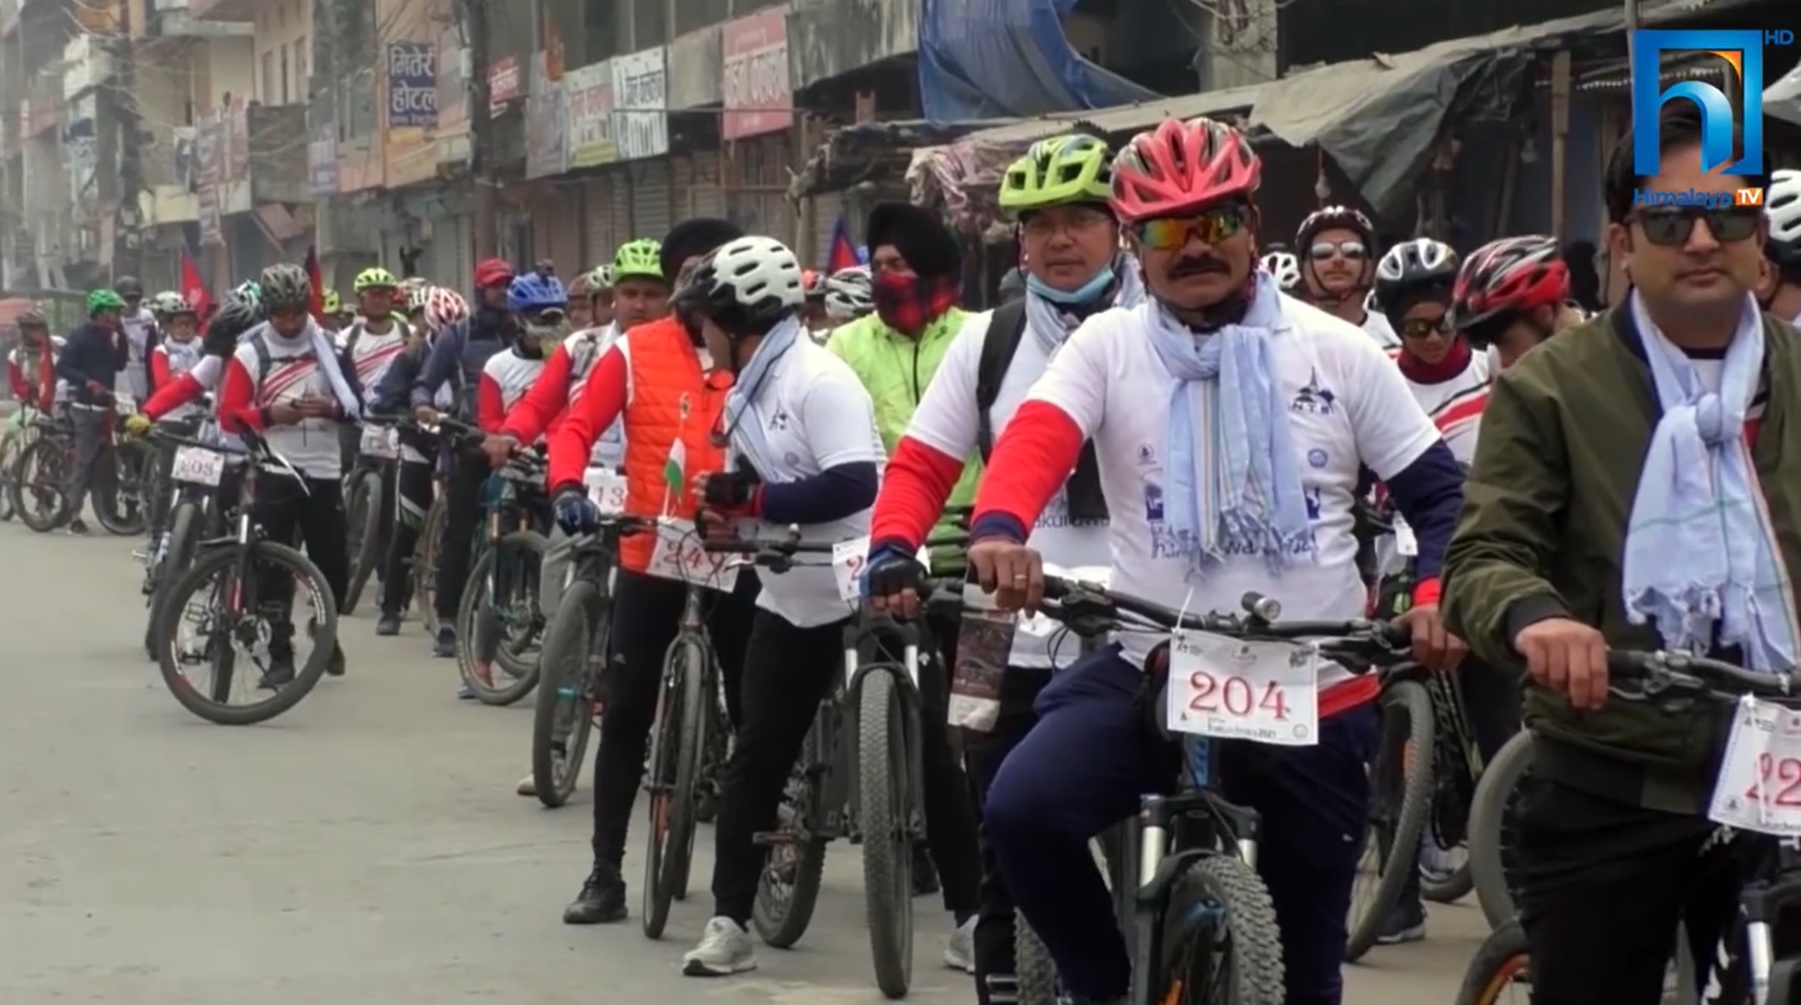 पर्यटन व्यवसायलाई प्रवर्द्धन गर्न टुर दि ठाकुरद्वारा साइकल यात्रा (भिडियो रिपोर्टसहित)